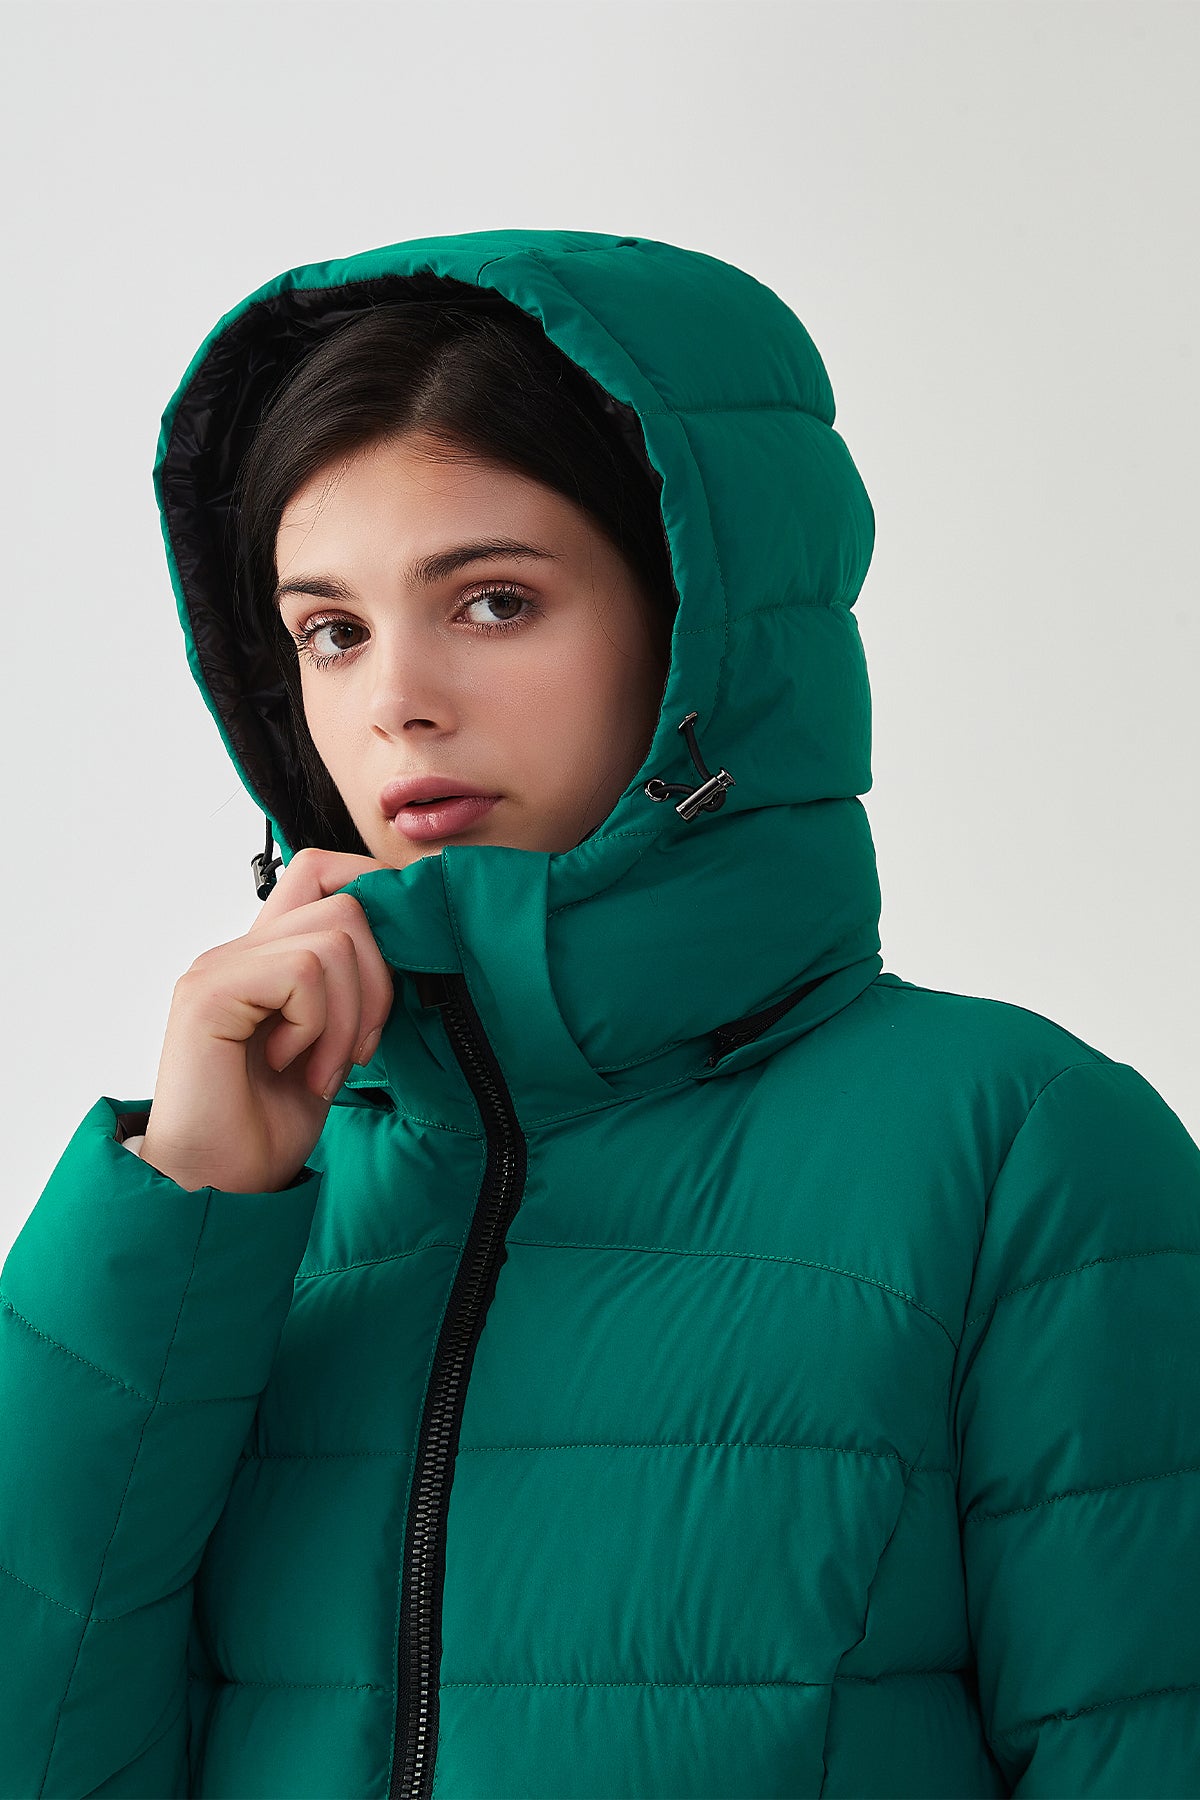 Women Packable Puffer Coat Solid Lightweight Puffer Jackets Warm